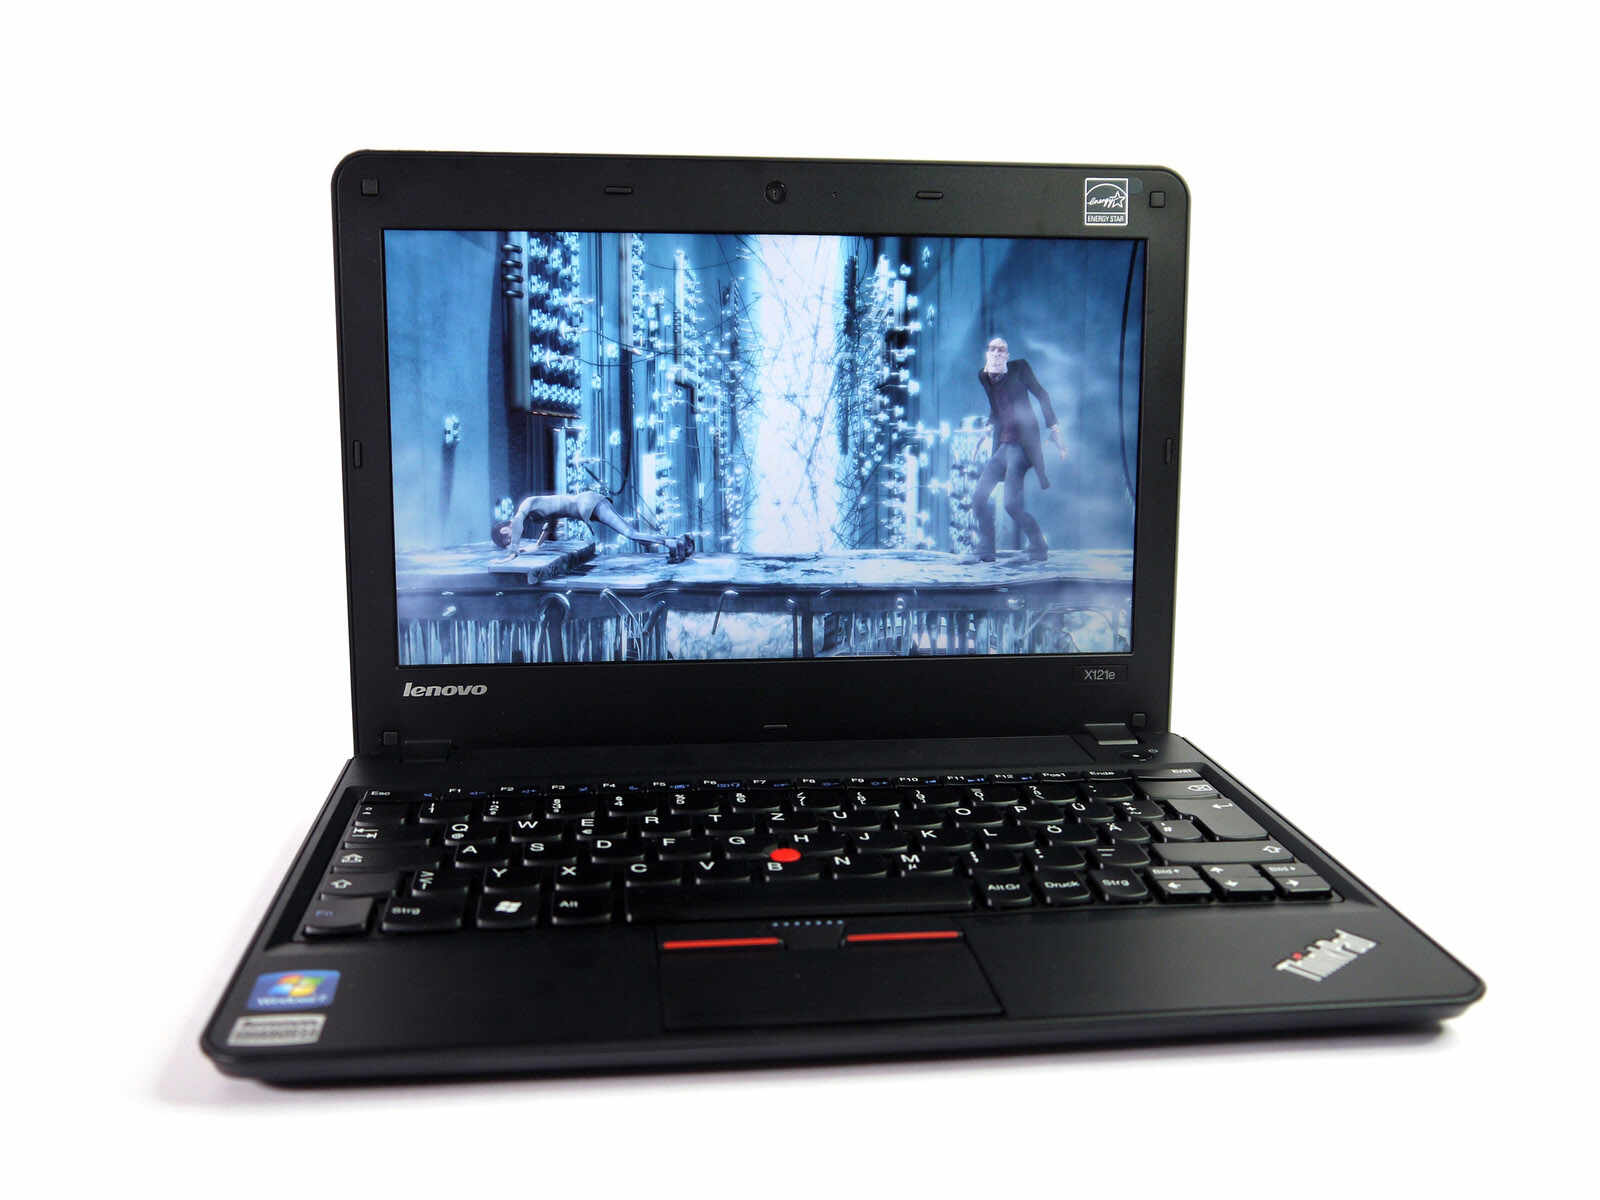 Laptop LENOVO ThinkPad x121e, AMD E300 1.30GHz, 4GB DDR3, 320GB SATA, Webcam, 11.6 Inch